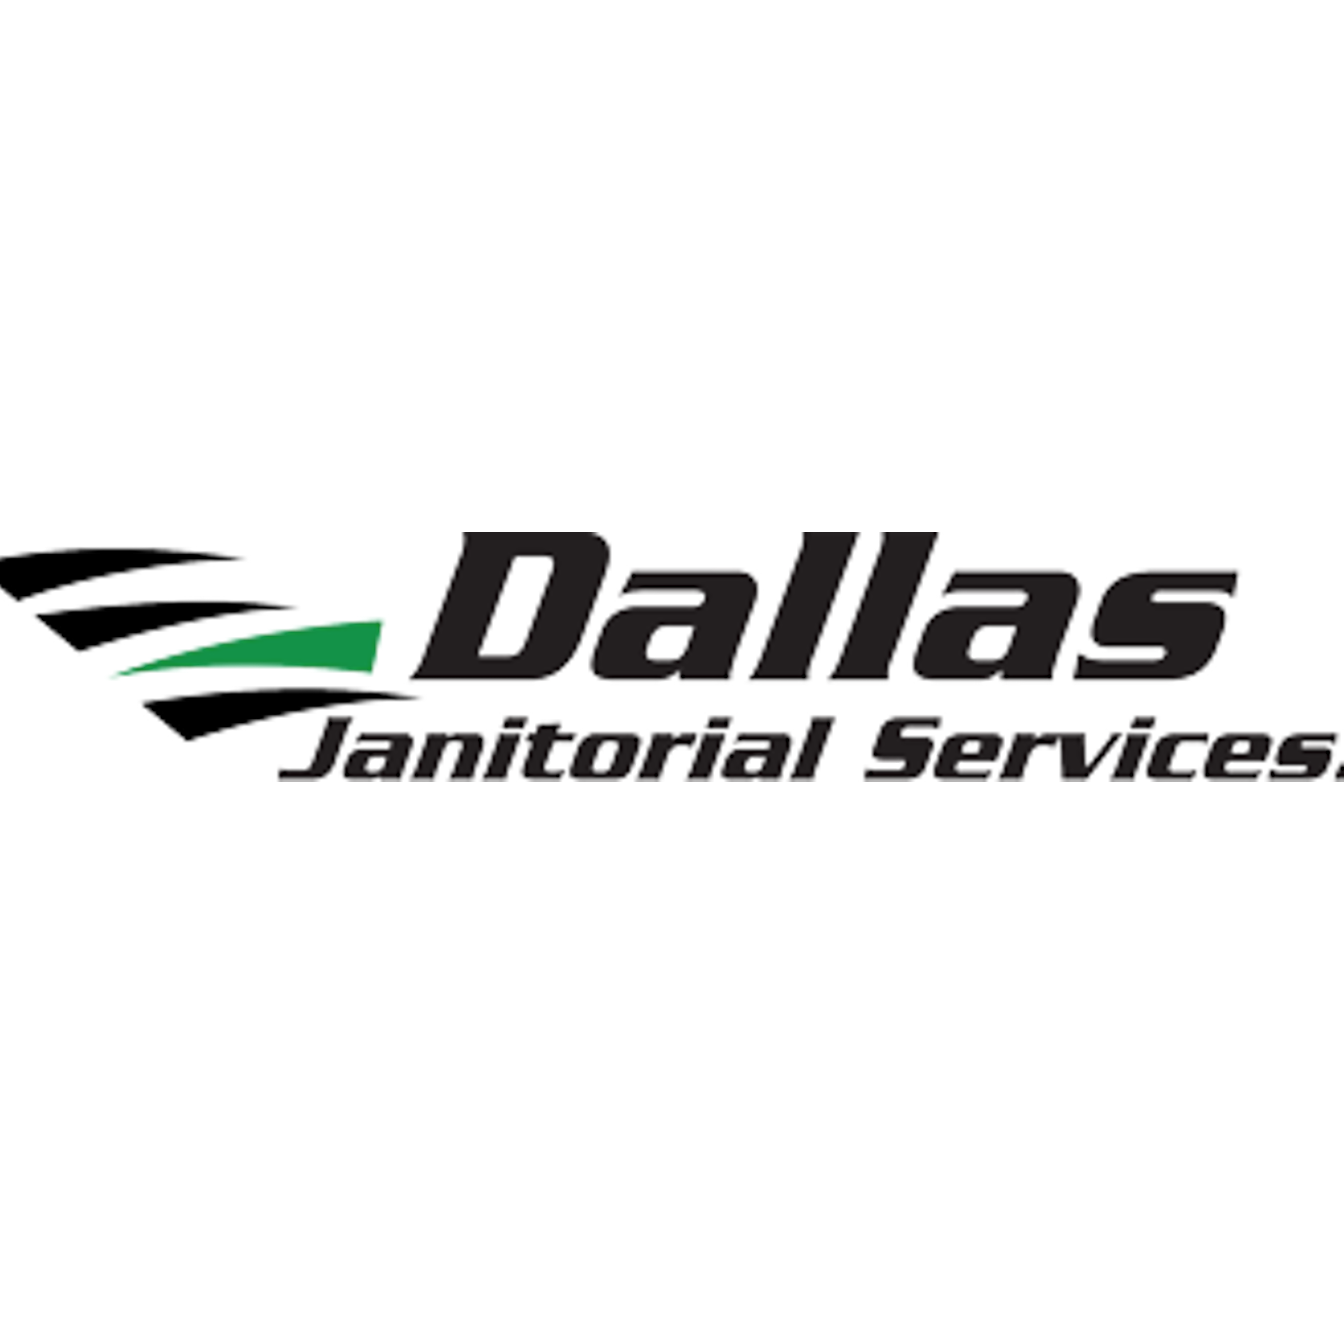 Dallas Janitorial Services - Plano, TX 75024 - (214)778-3689 | ShowMeLocal.com